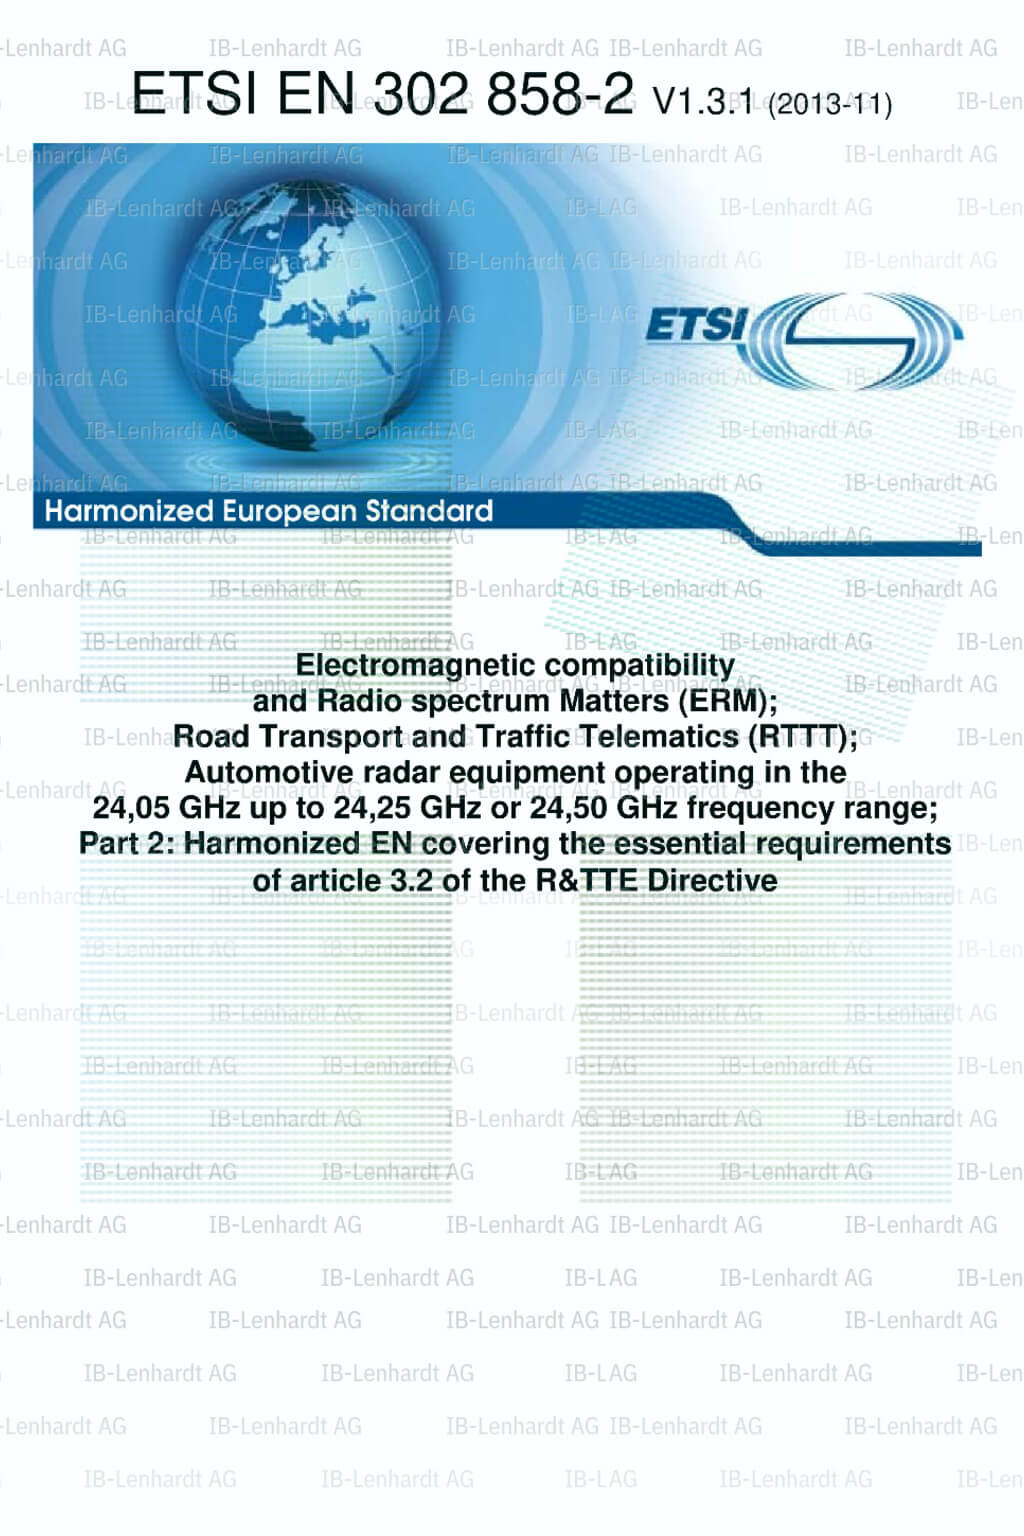 ETSI EN 302 858-2 V1.3.1 